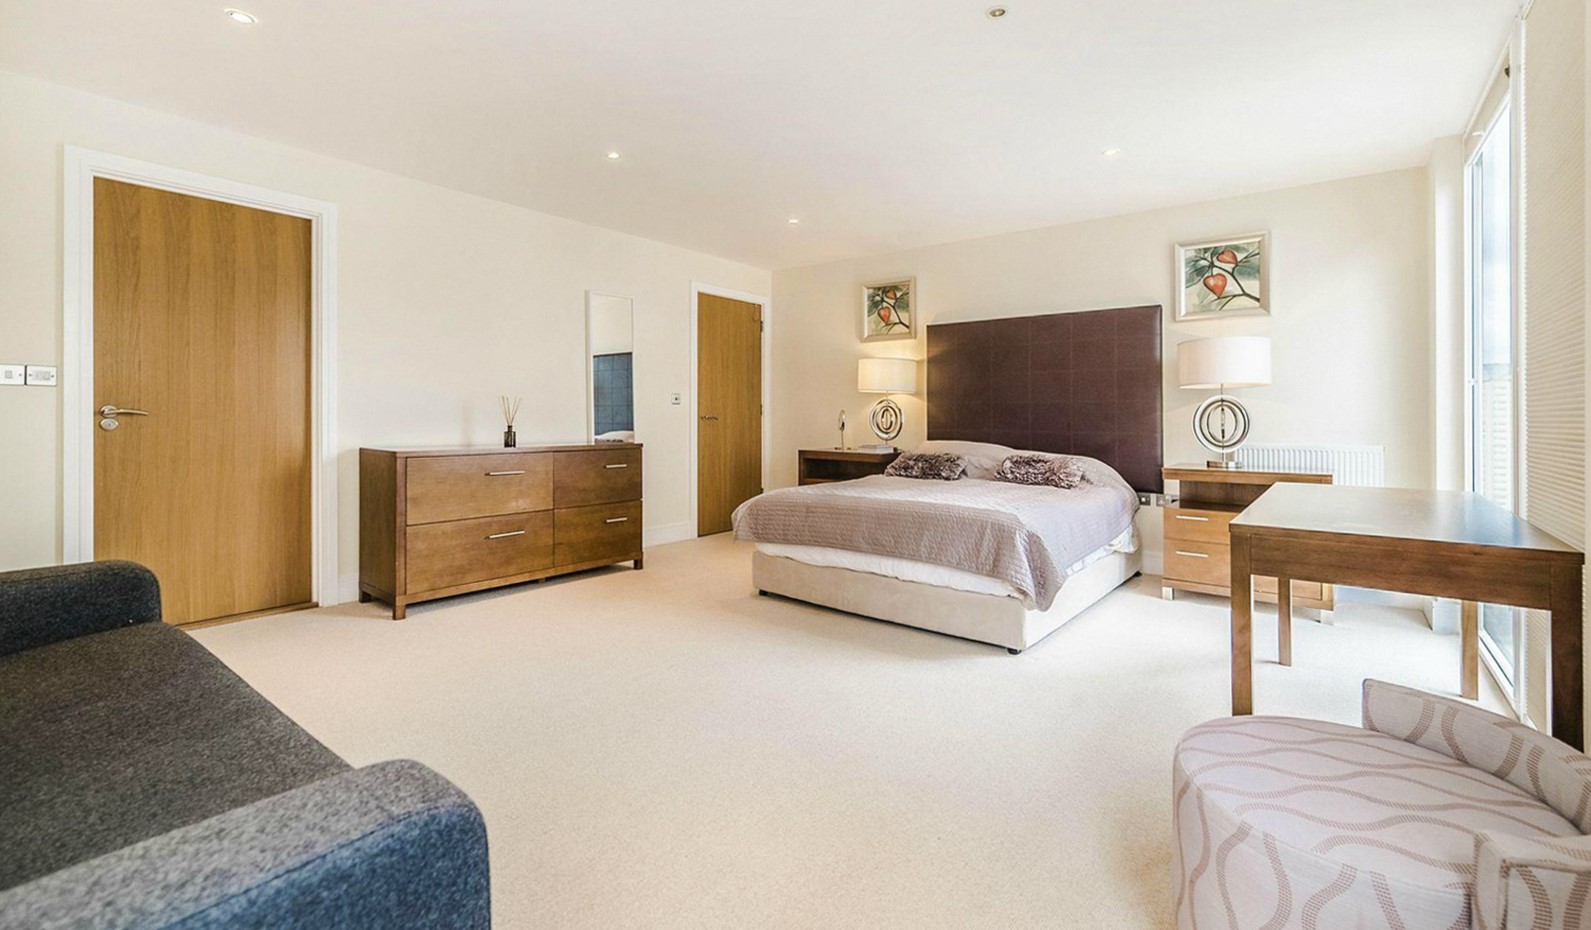 Современный интерьер спальни оформлен с использованием коричневого и белого цвета